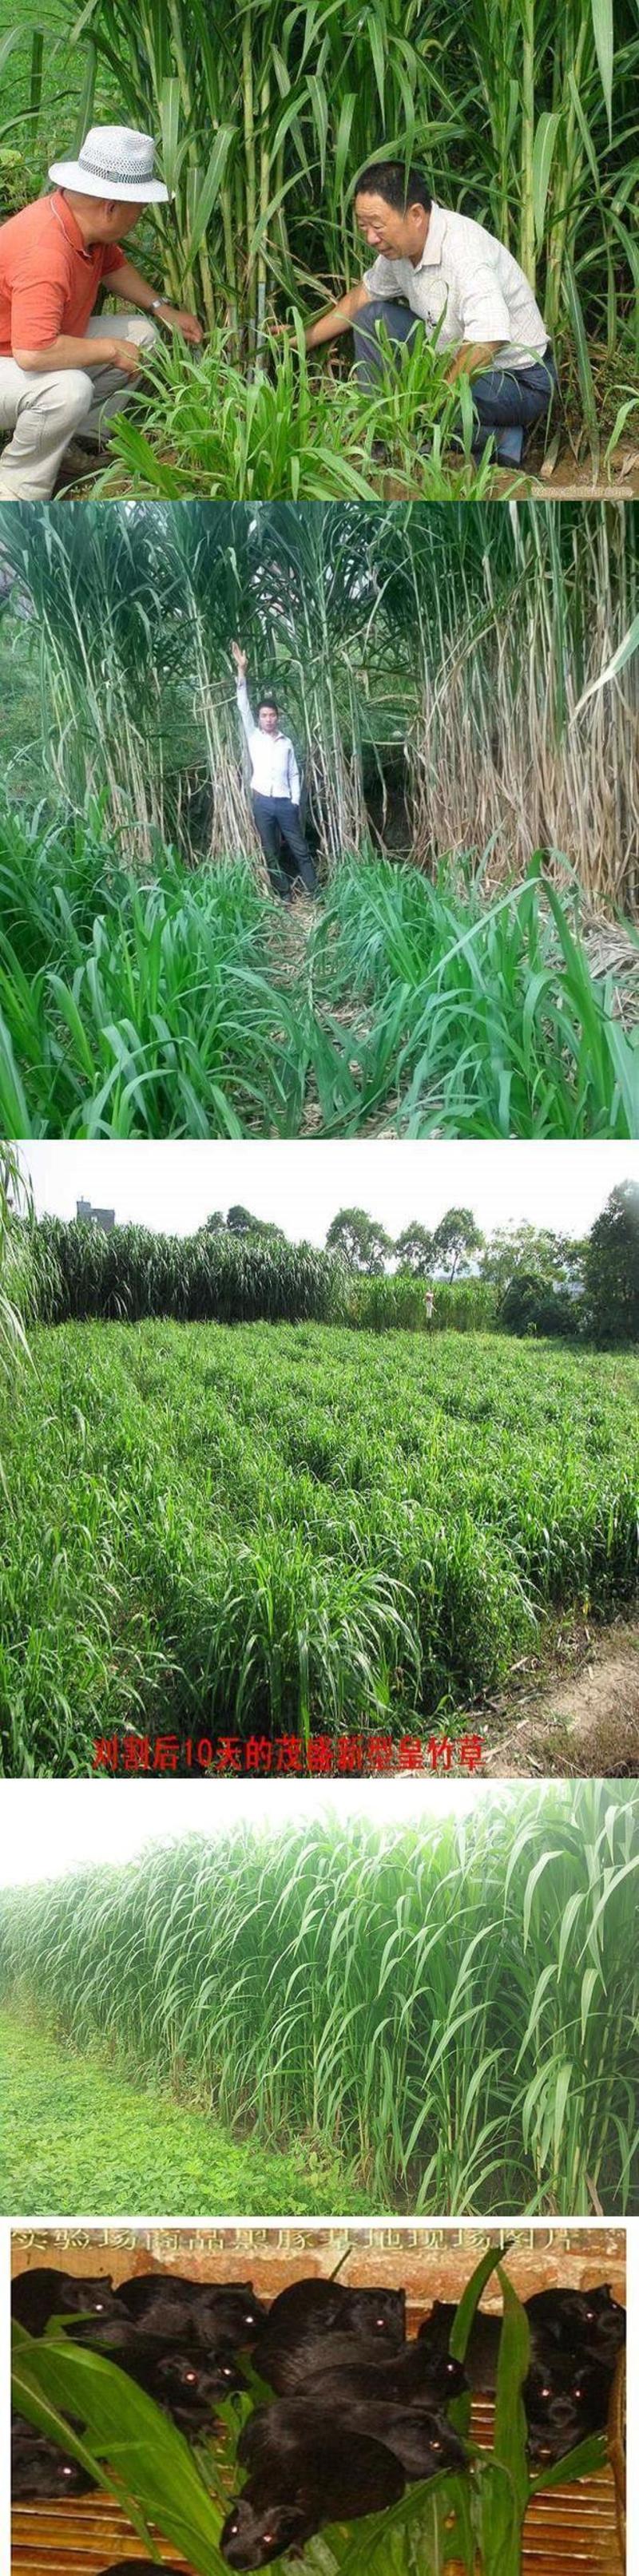 新型特高产巨菌草种子多年生高产牧草种子甜象草皇竹草种子包